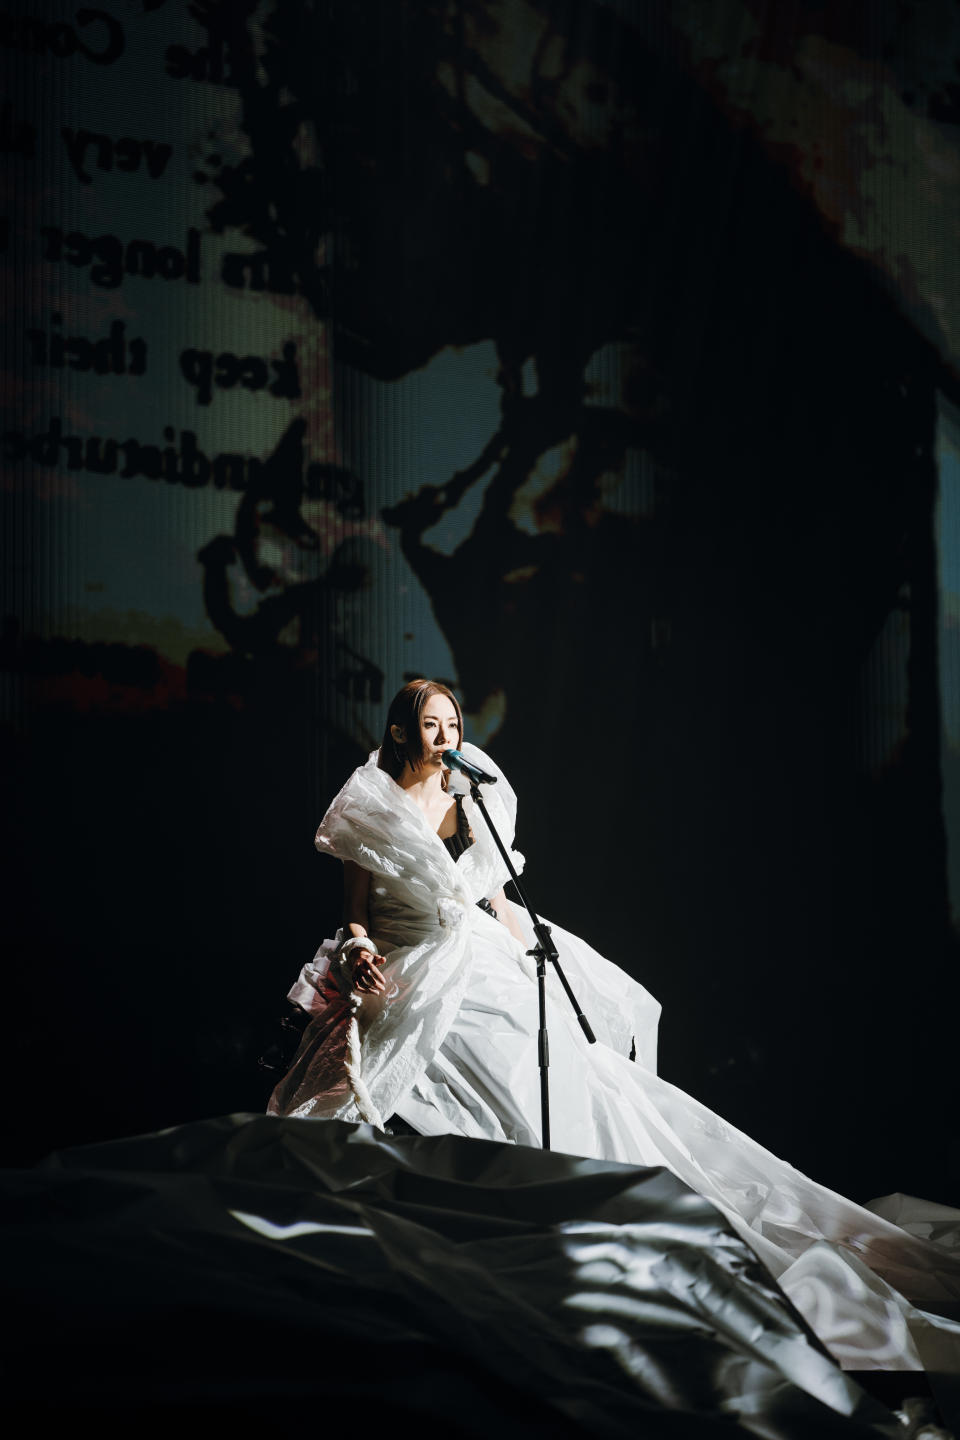 演唱會開首，四位演員先進場，在Stephy身上貼上不同印記，她身上的裙子也有紙質視覺效果。